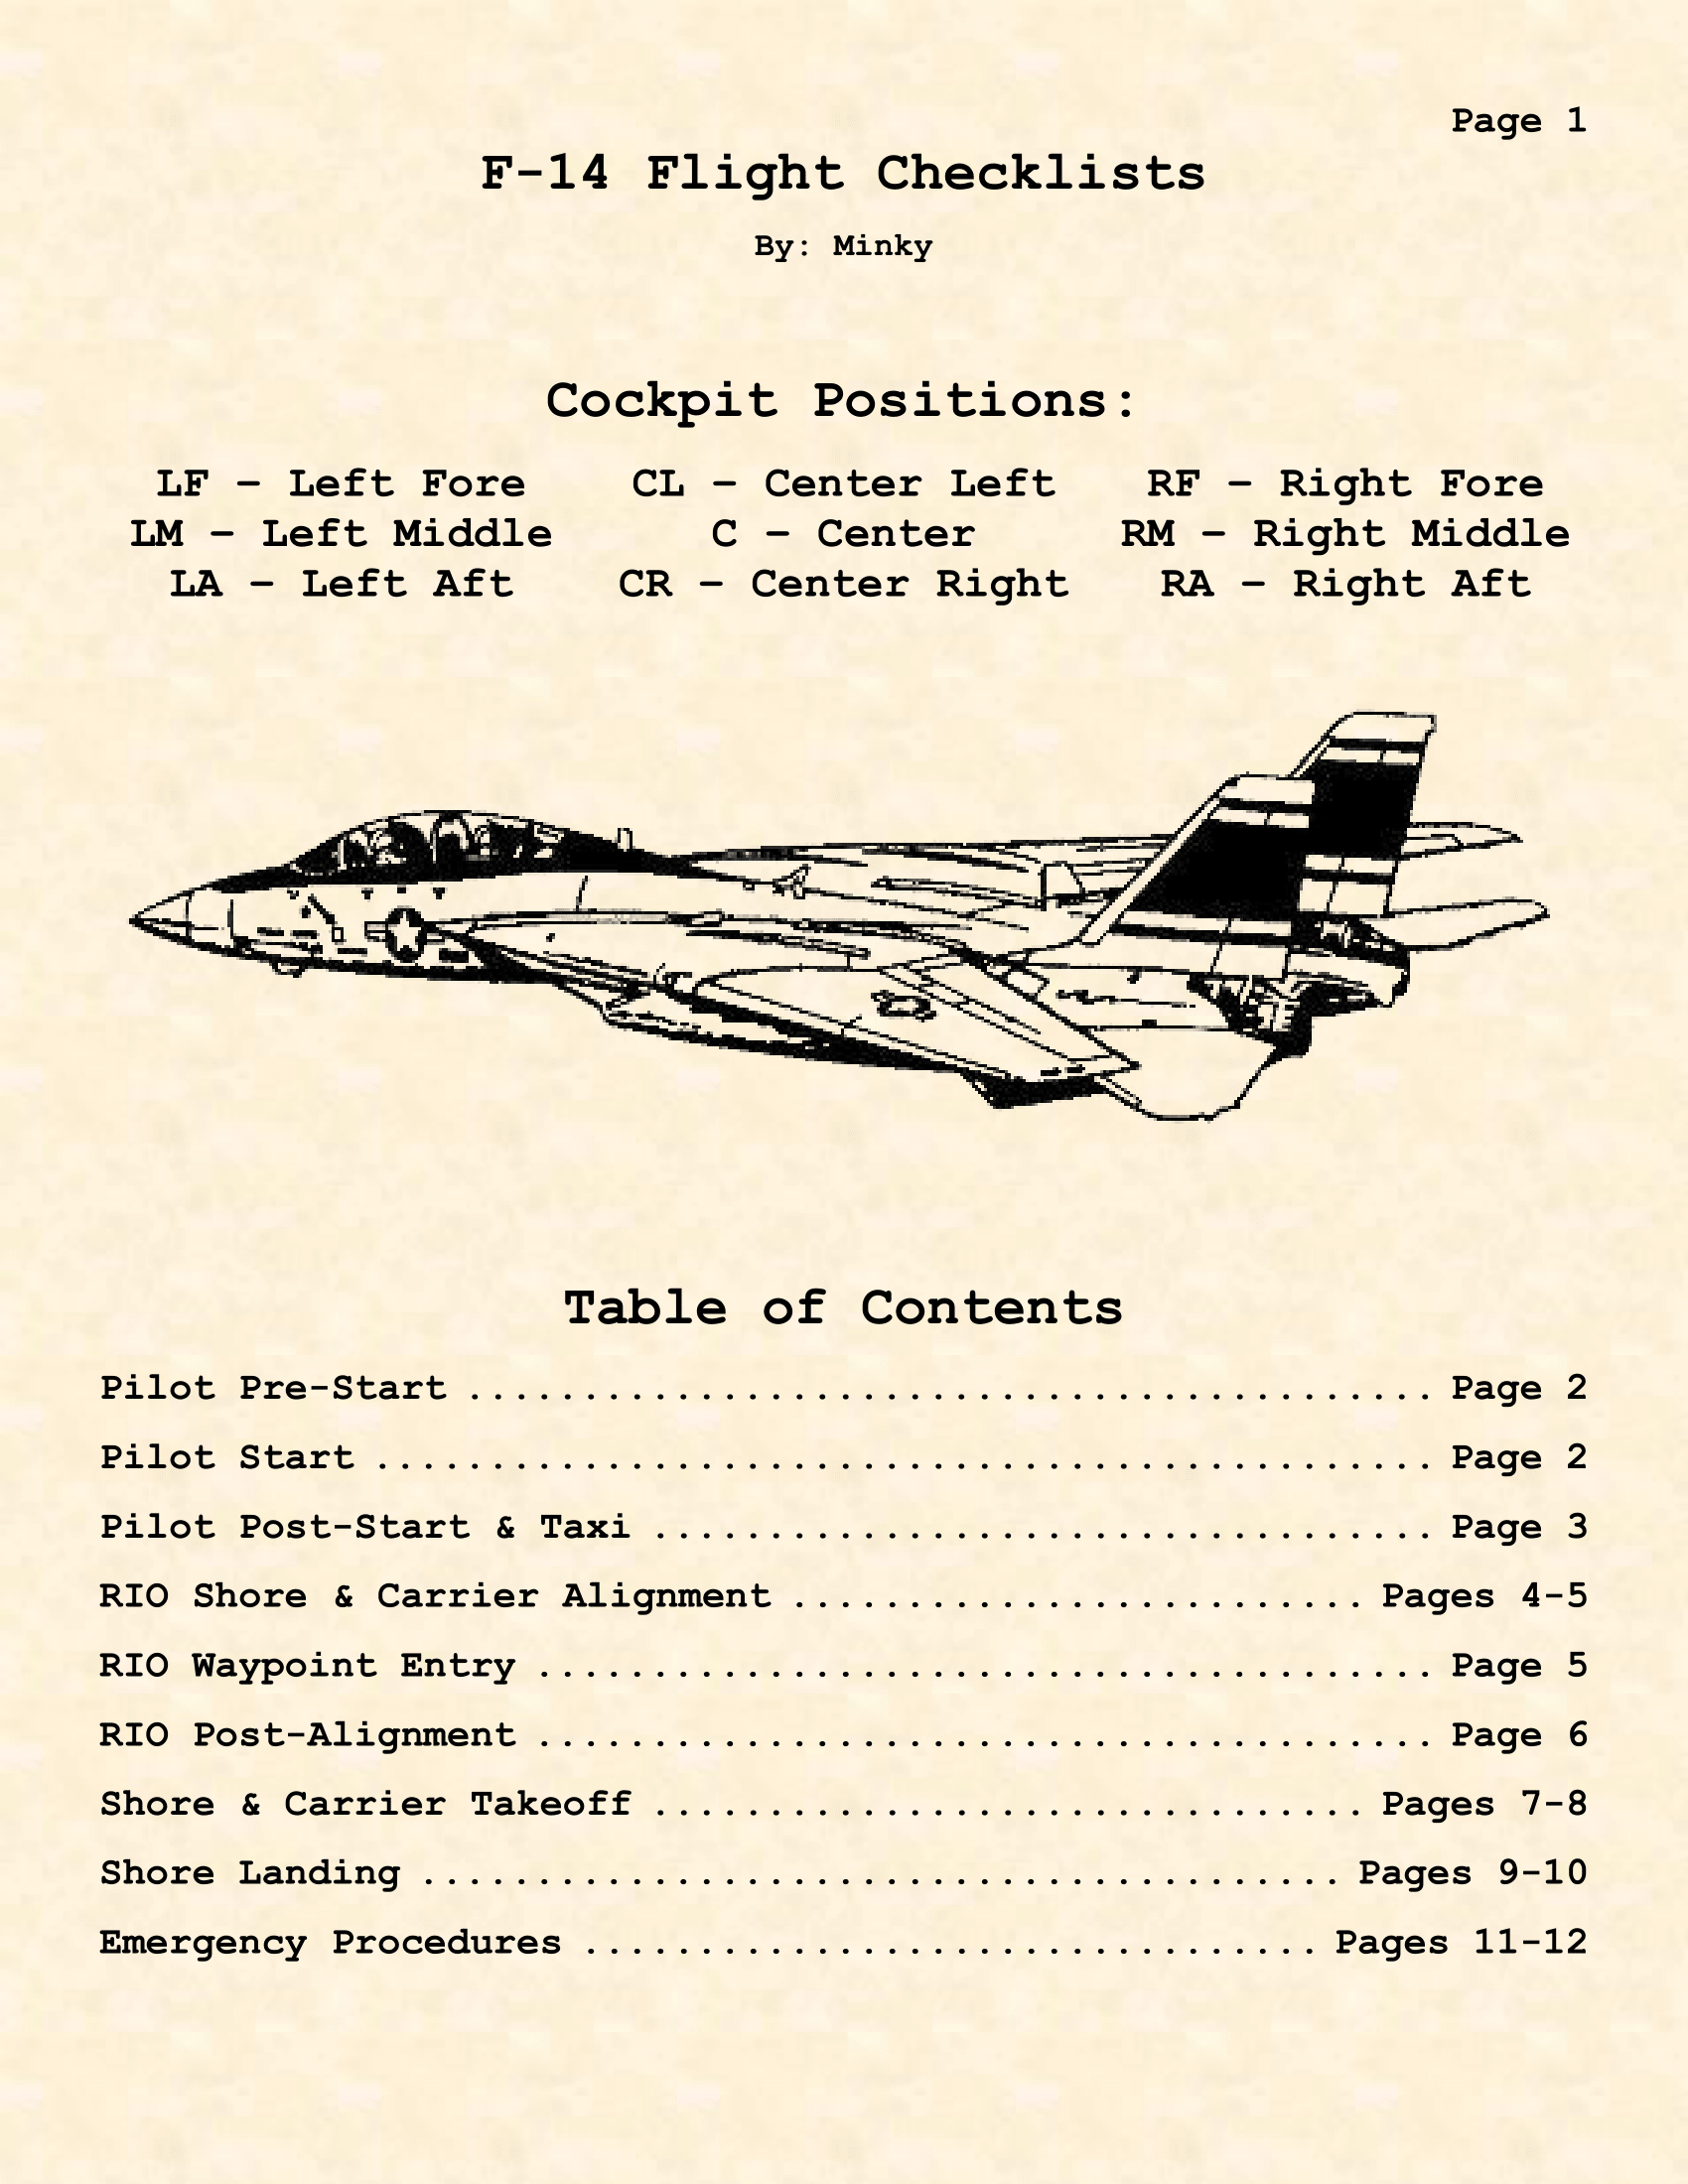 F-14 Kneeboard Checklists